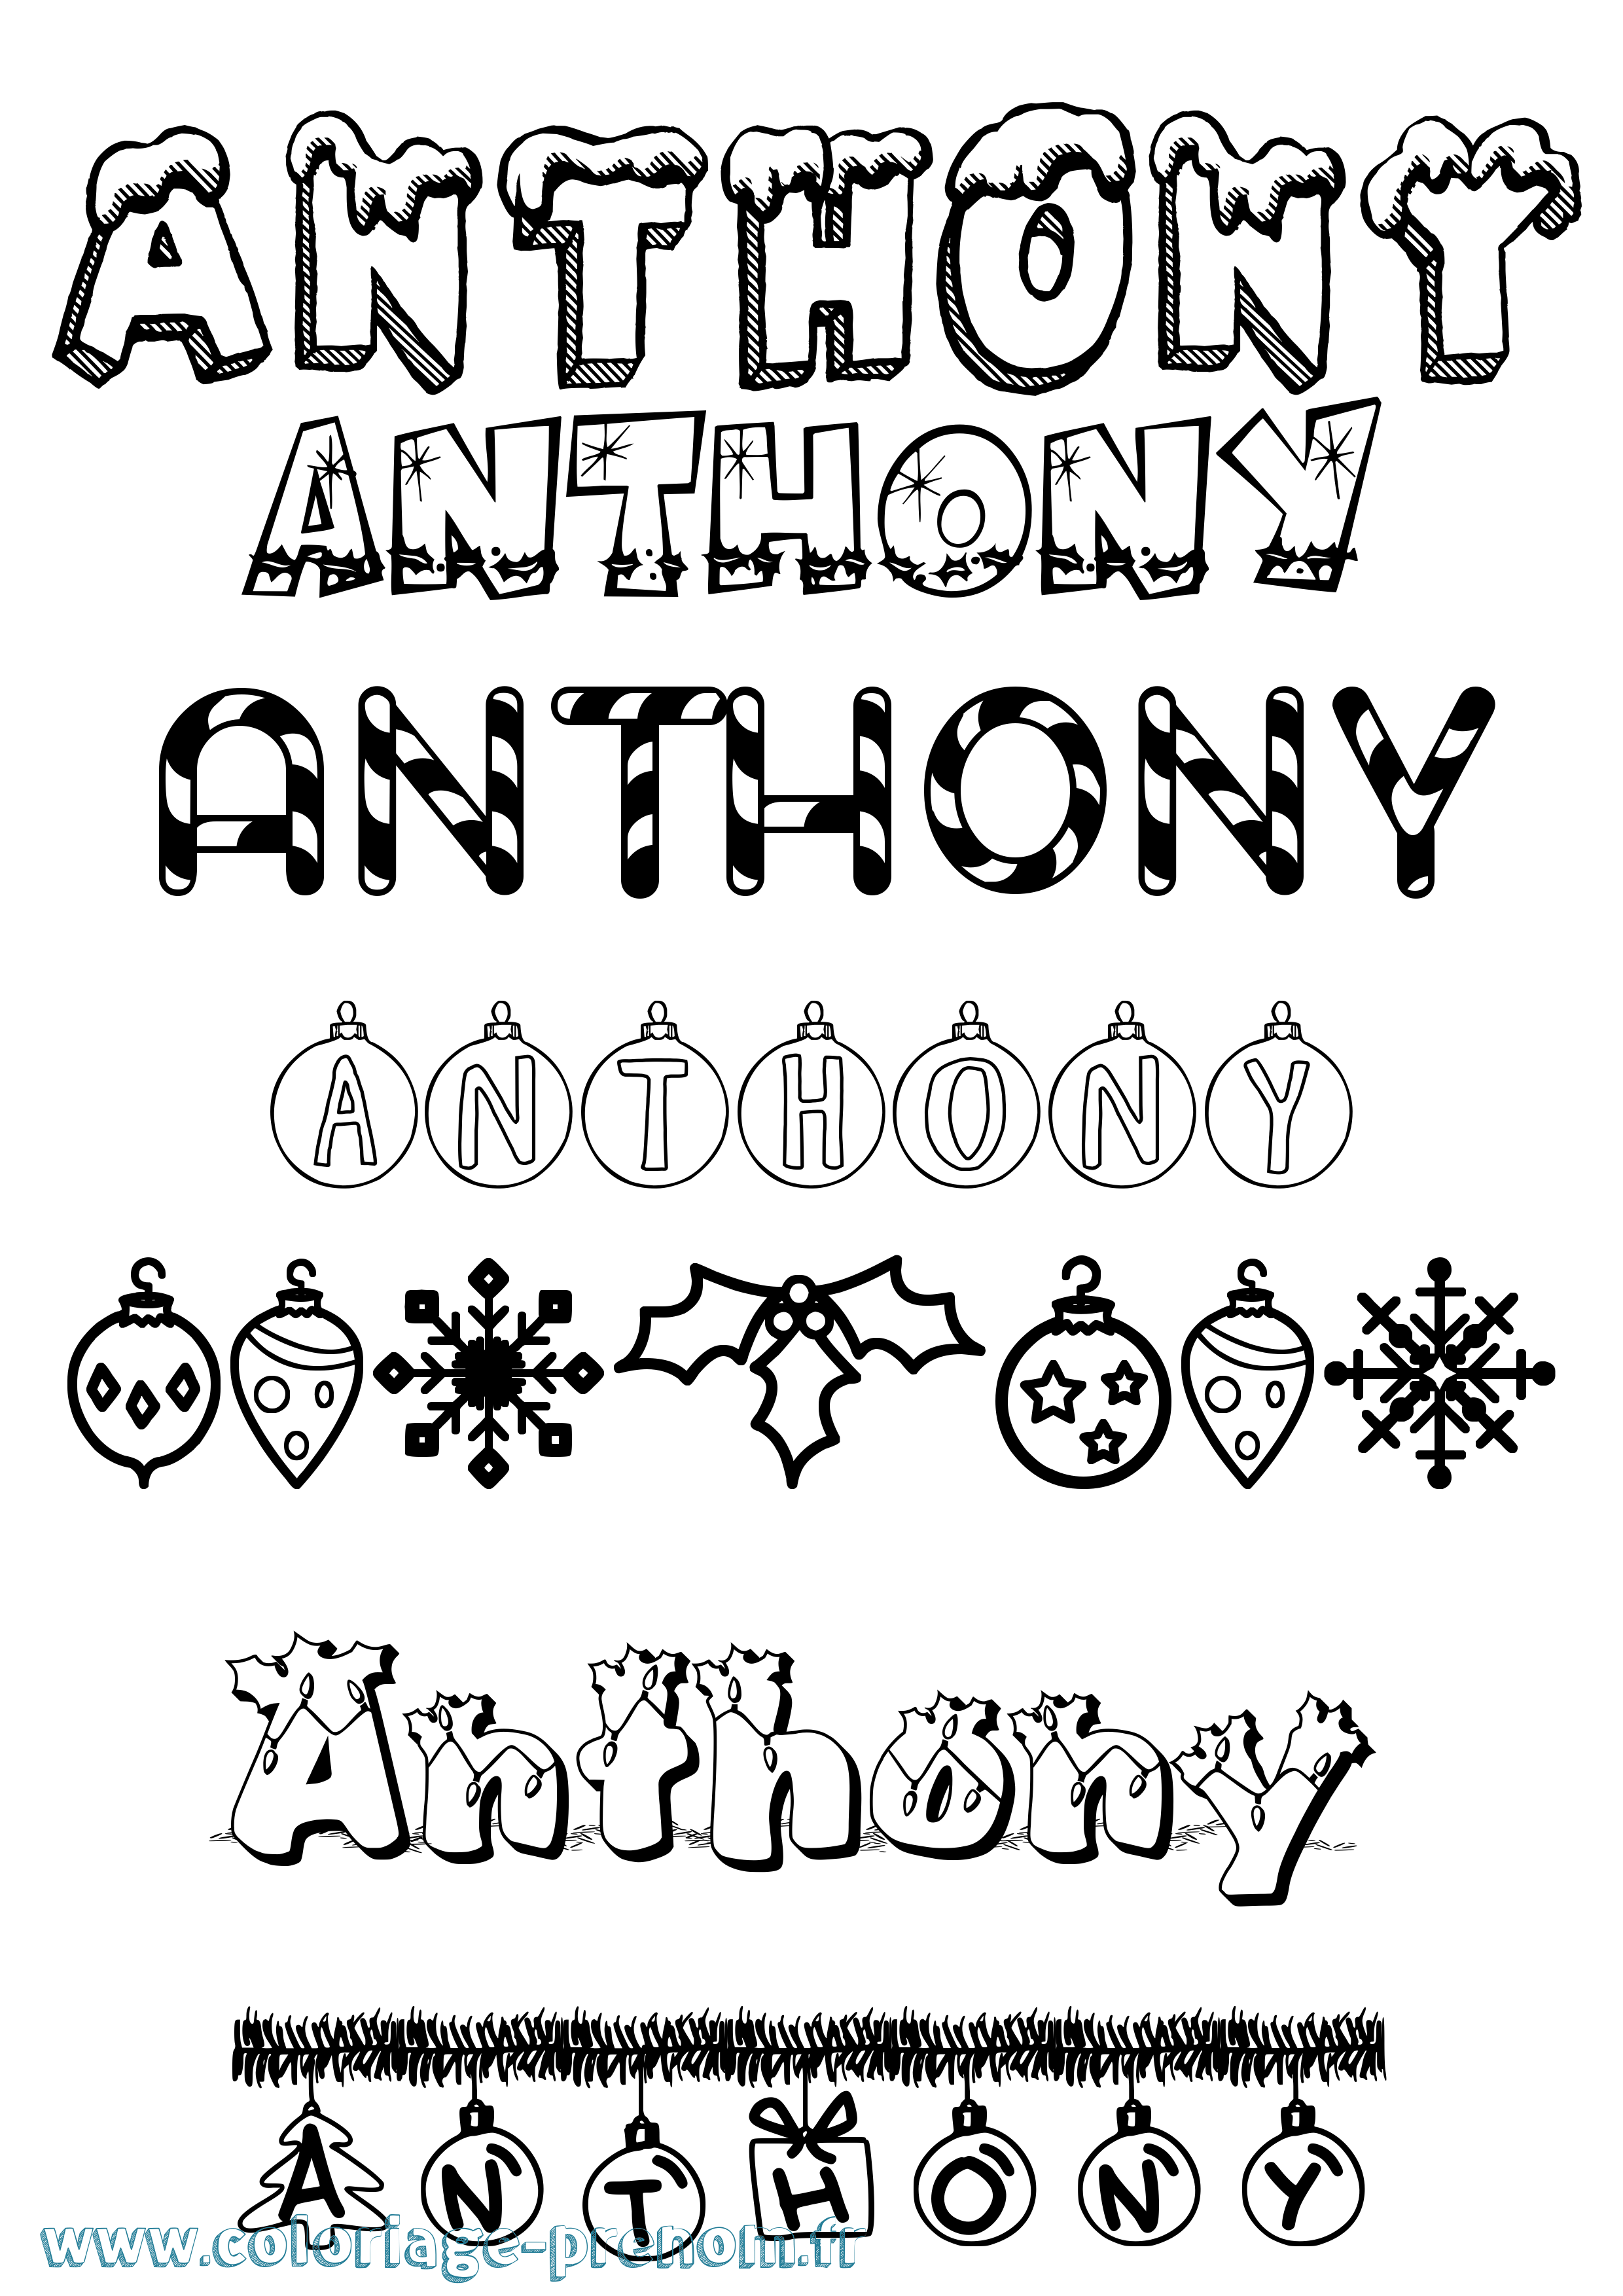 Coloriage prénom Anthony